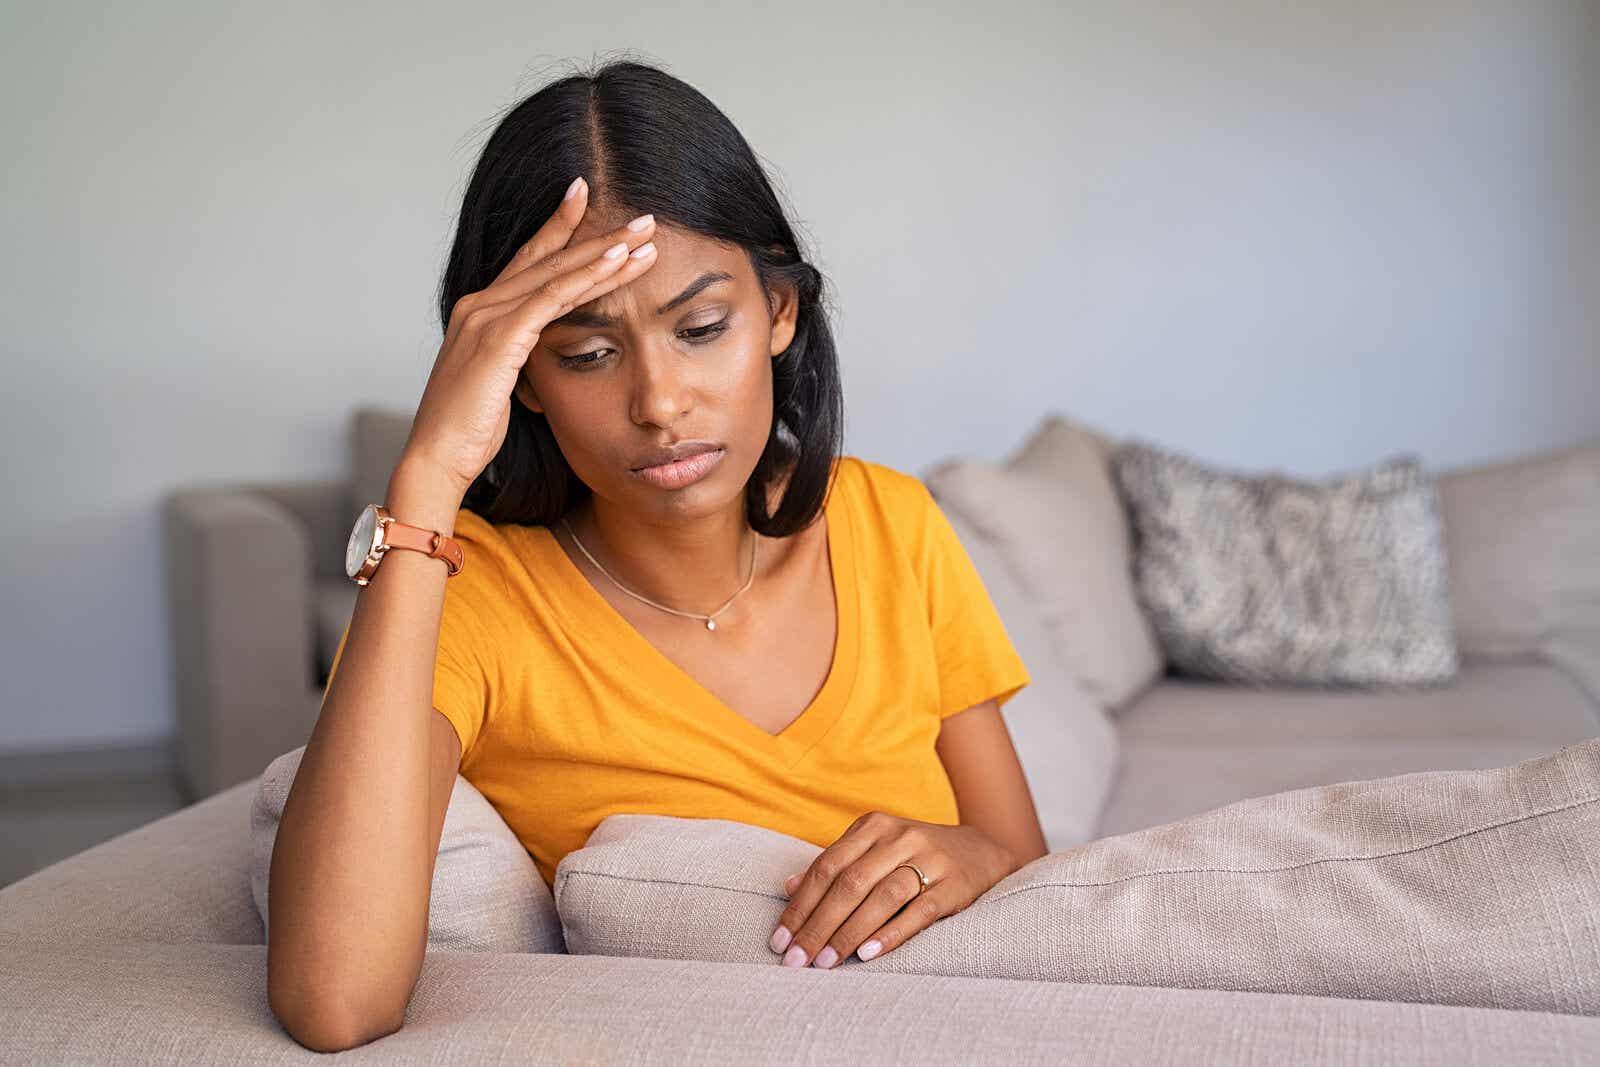 En kvinde, der sidder på en sofa med sin hånd på panden, oplever hovedpine efter fødsel